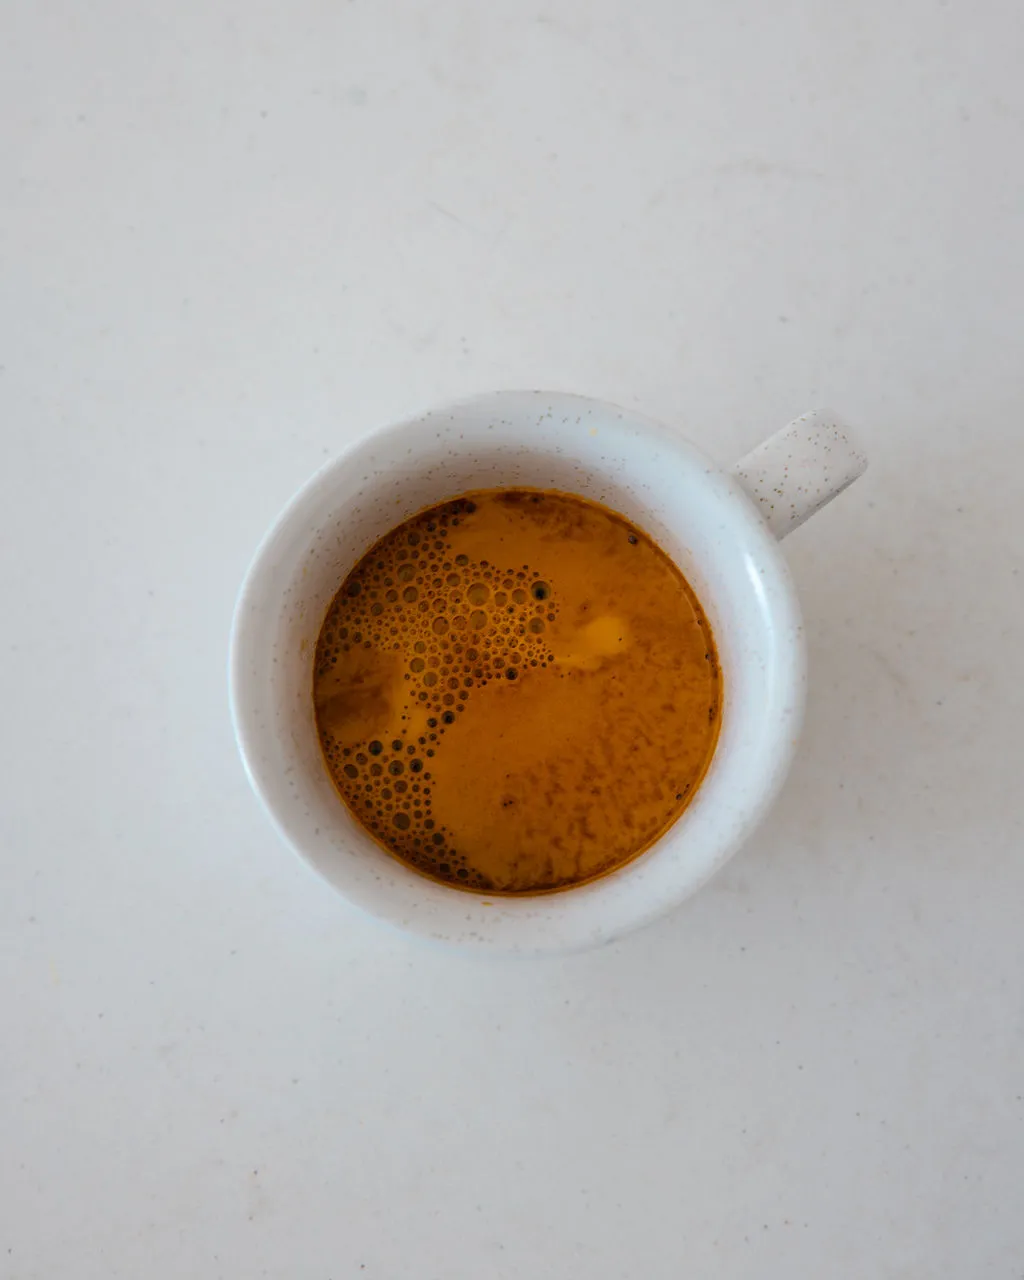 espresso shot from the linea micra